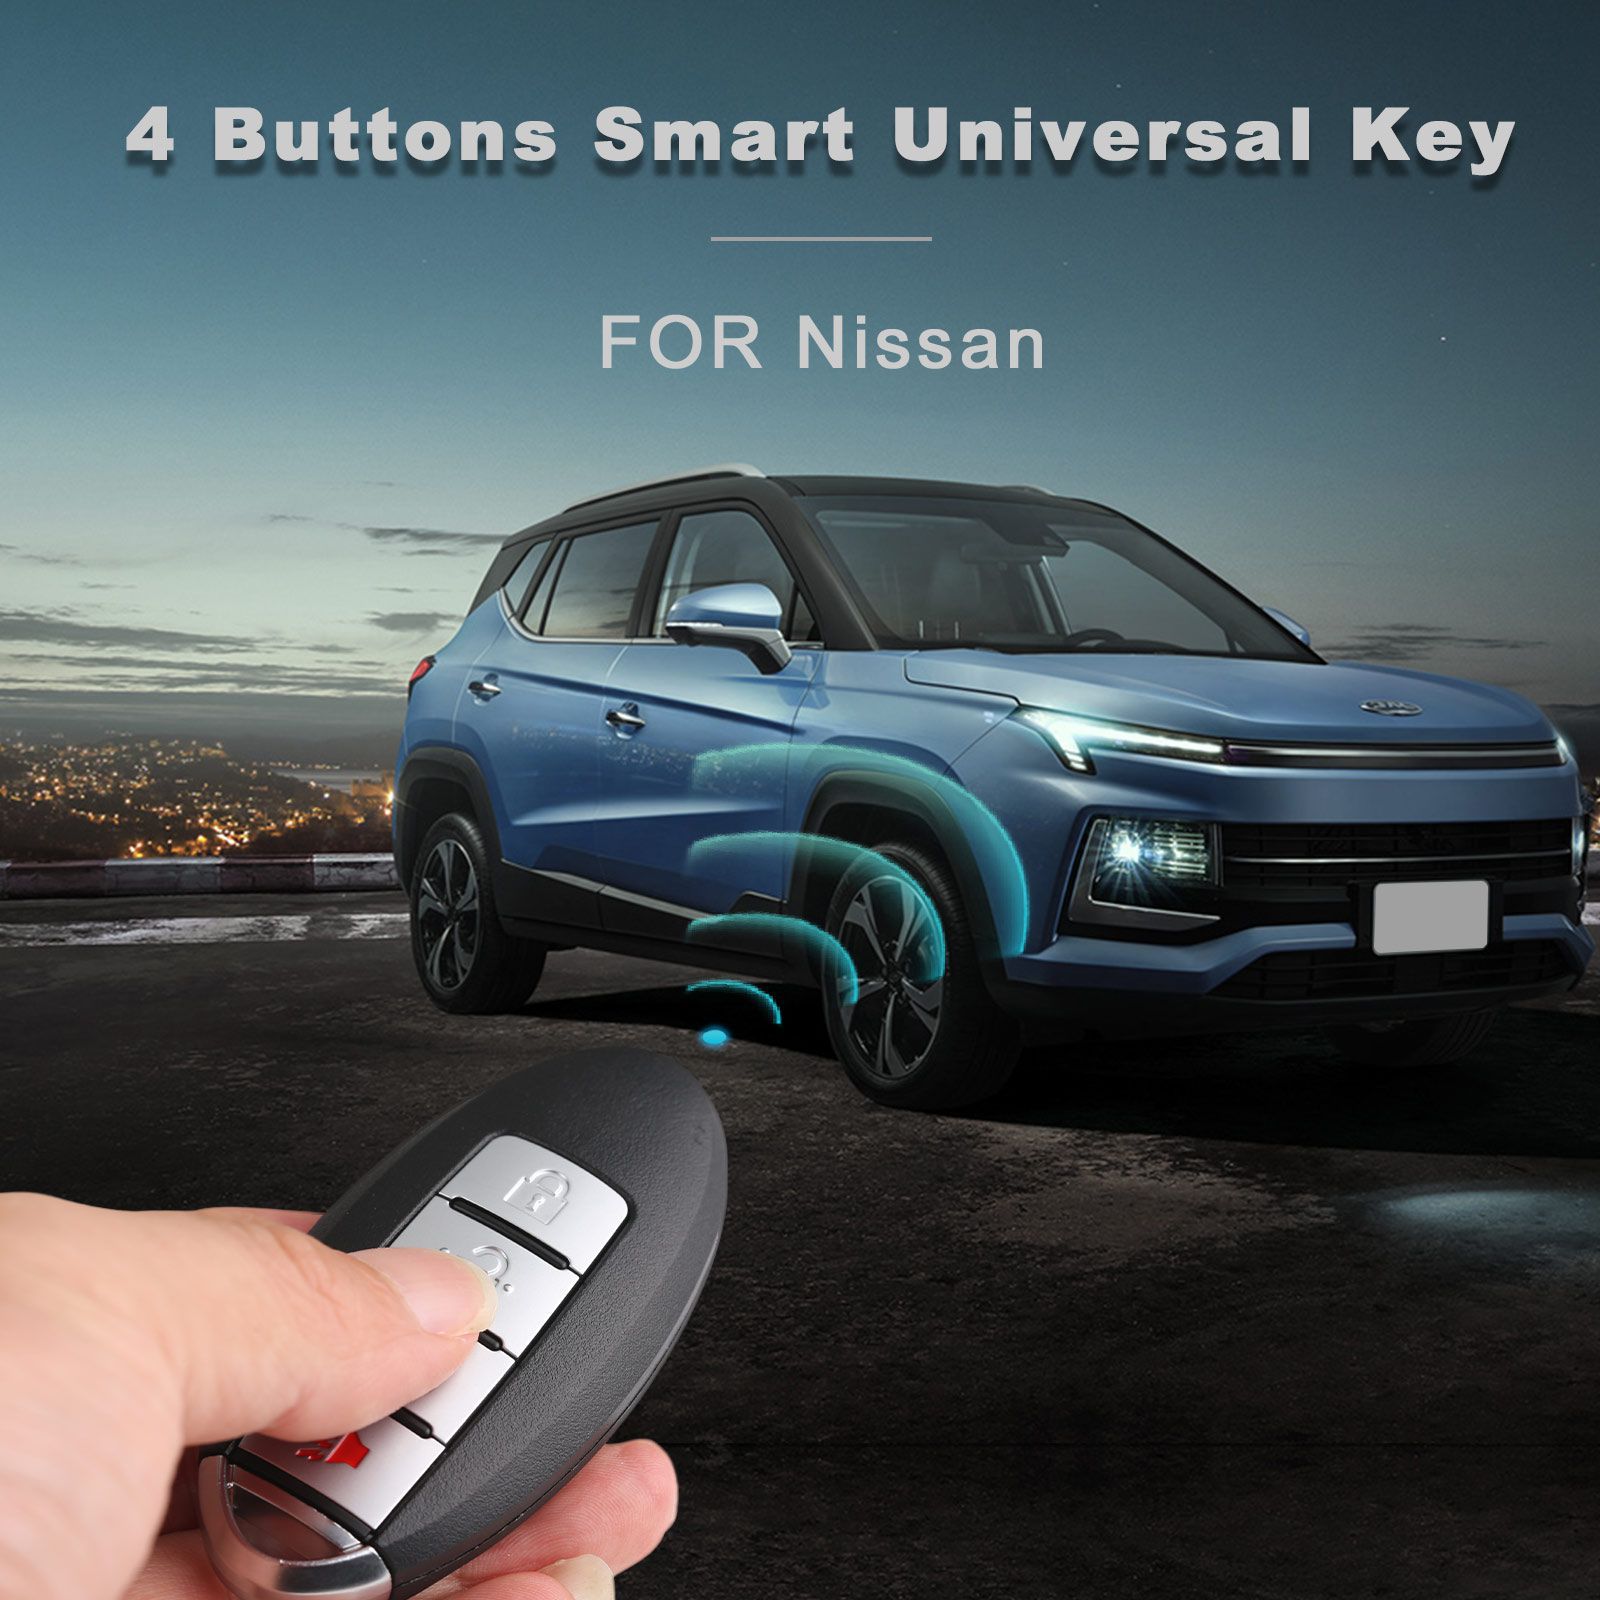 Autel ikeyns004al Nissan 4 boutons clés intelligentes universelles 5pcs / lot